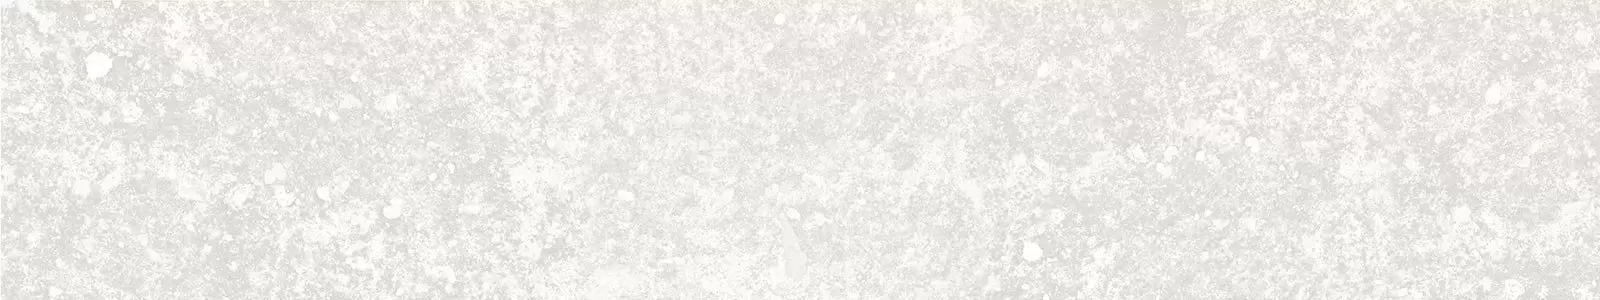 Скинали №8265 - Теплая серая текстура камня с белыми вкраплениями - фартук  для кухни в Москве